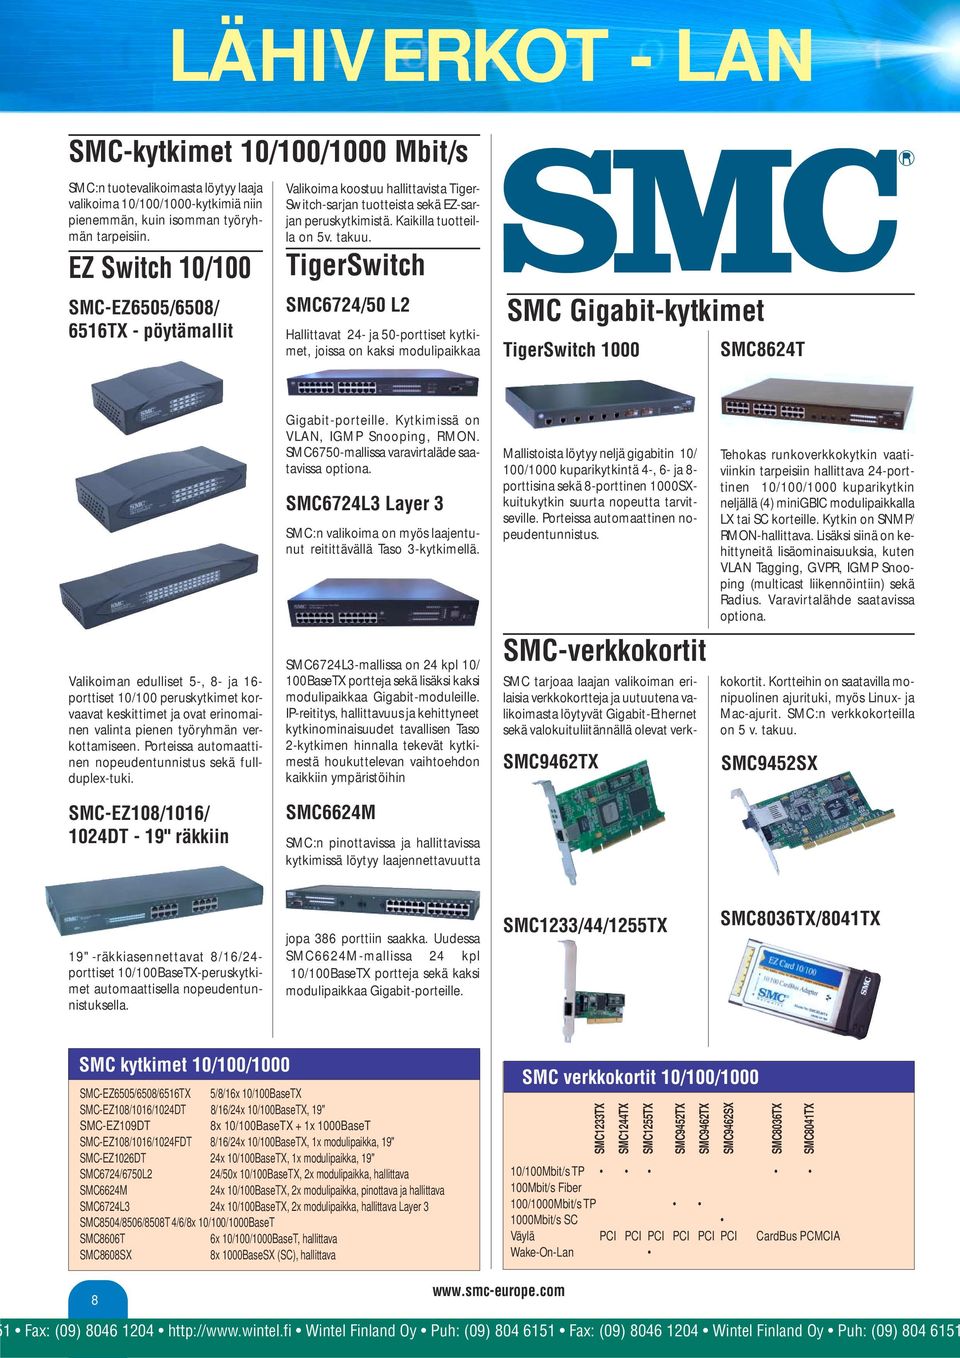 TigerSwitch SMC6724/50 L2 Hallittavat 24- ja 50-porttiset kytkimet, joissa on kaksi modulipaikkaa SMC Gigabit-kytkimet TigerSwitch 1000 SMC8624T Valikoiman edulliset 5-, 8- ja 16- porttiset 10/100